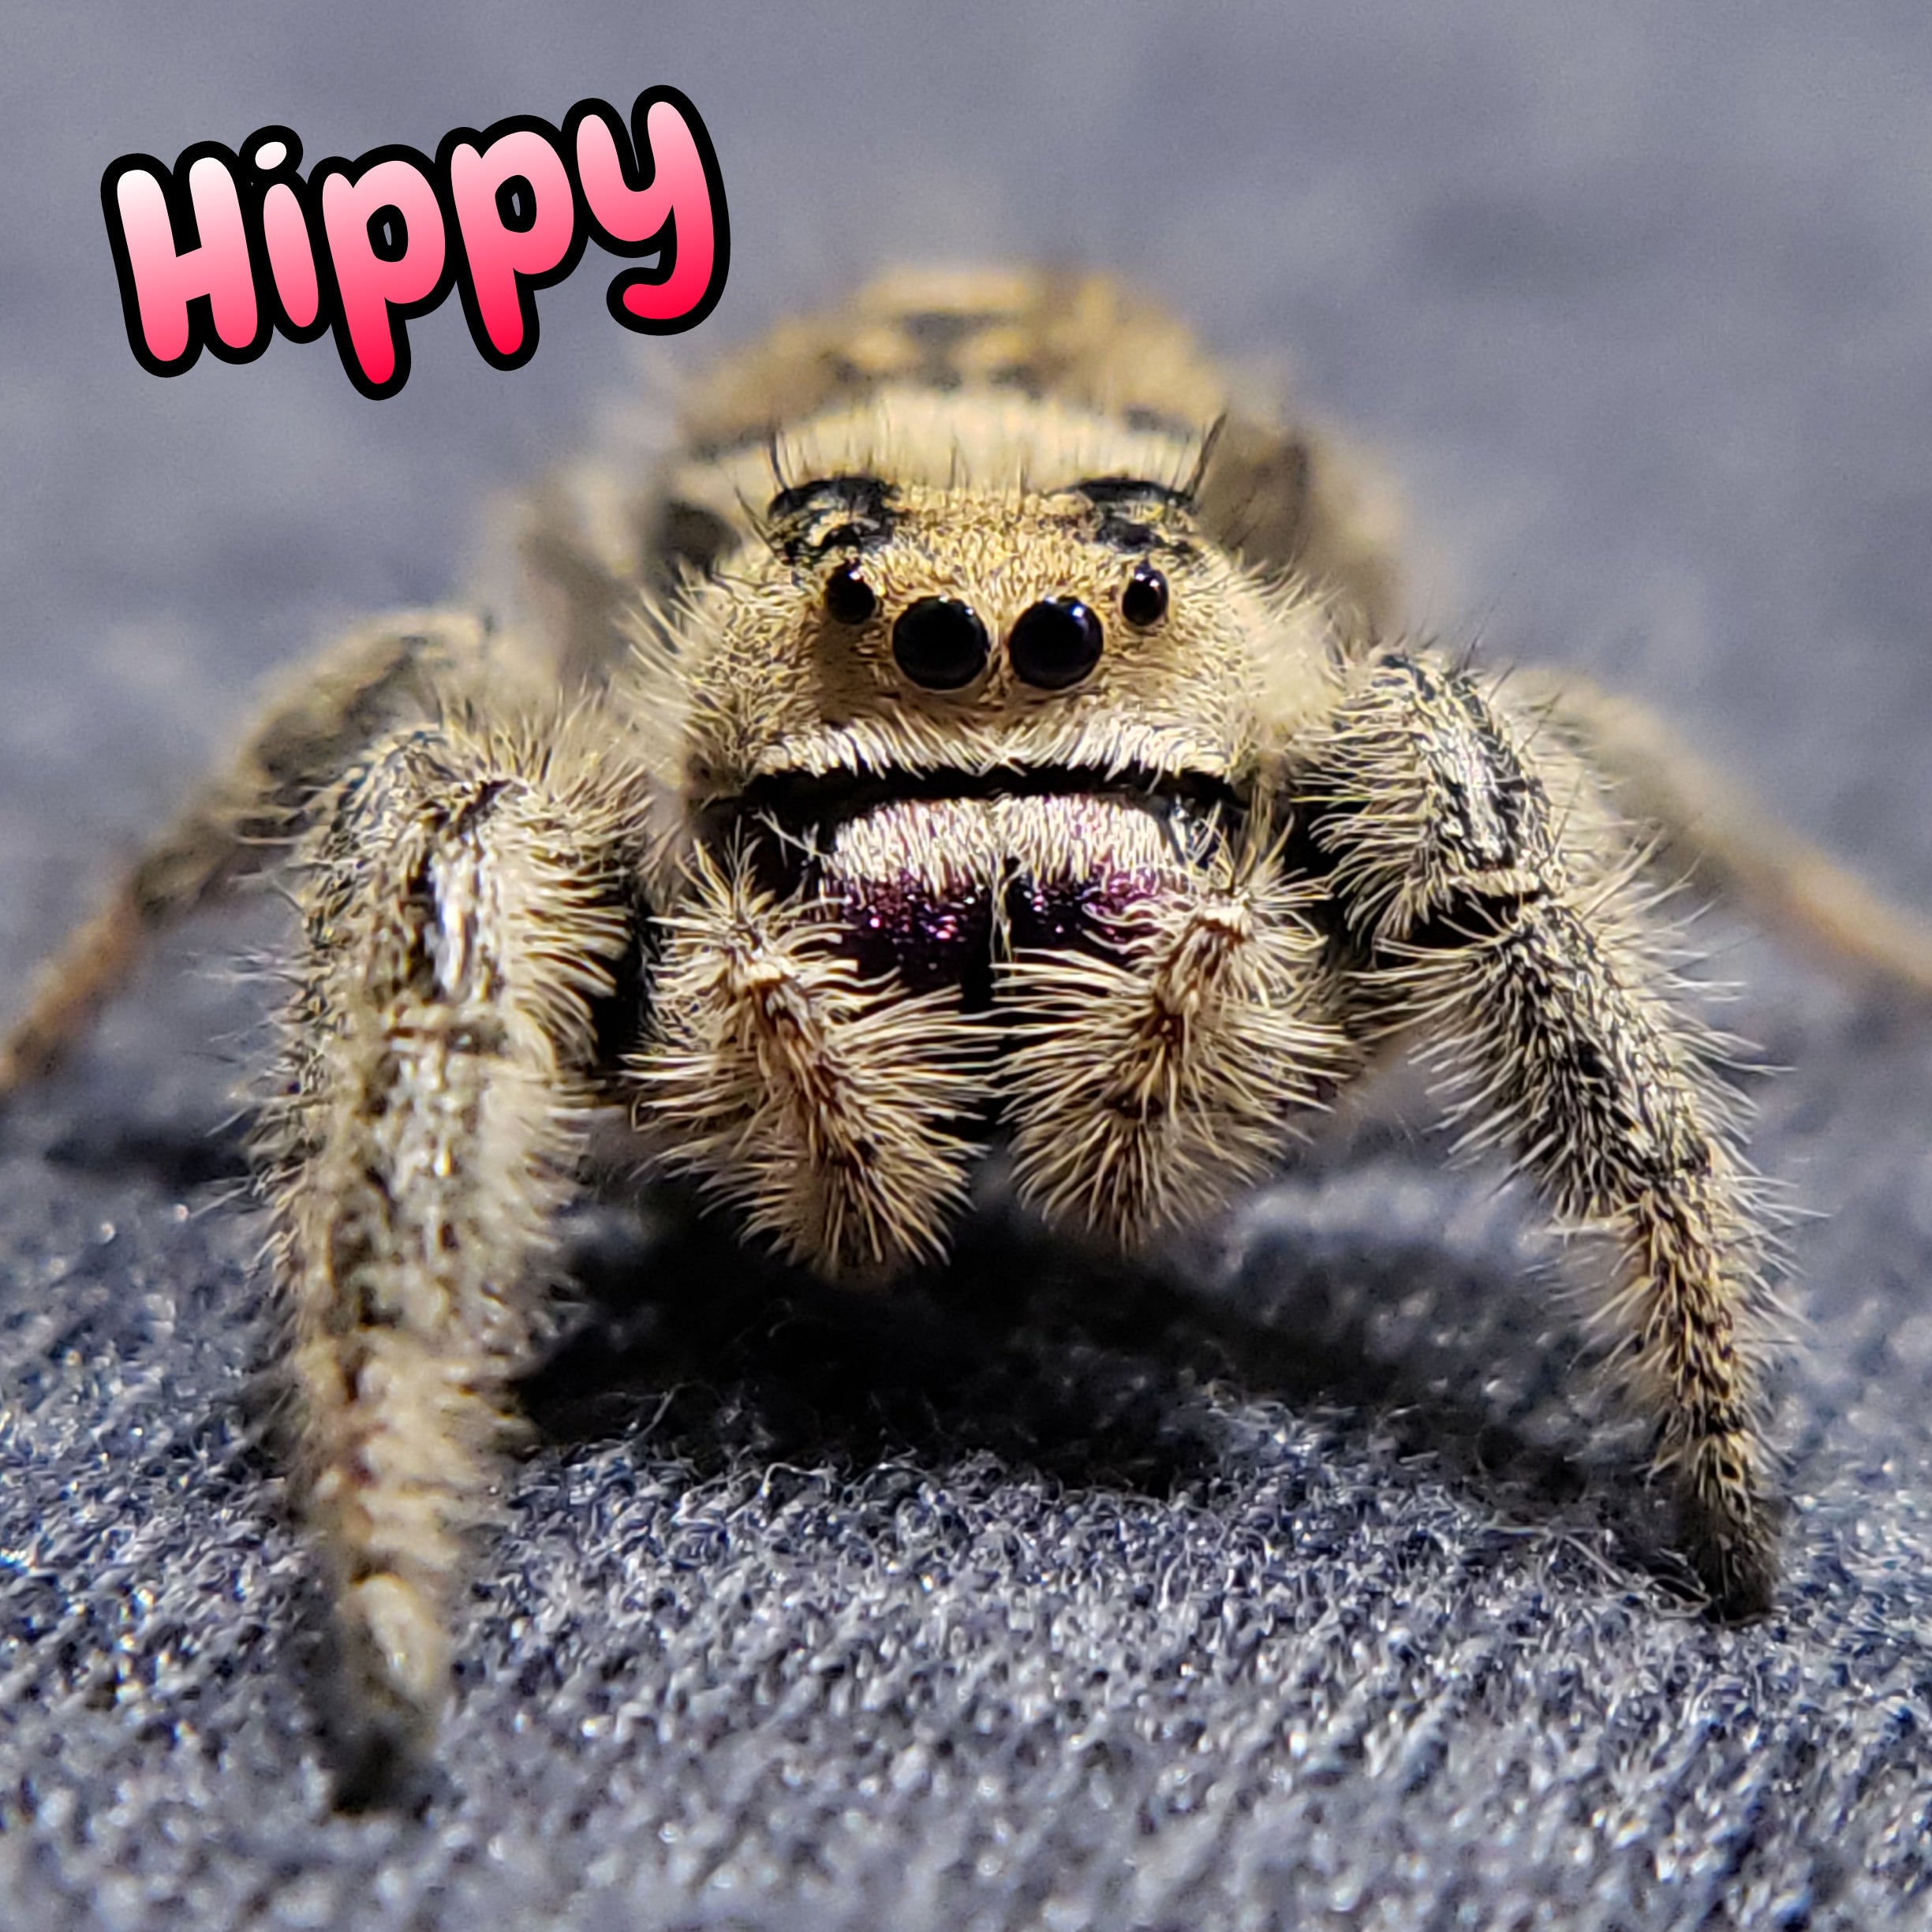 Regal Jumping Spider "Hippy"